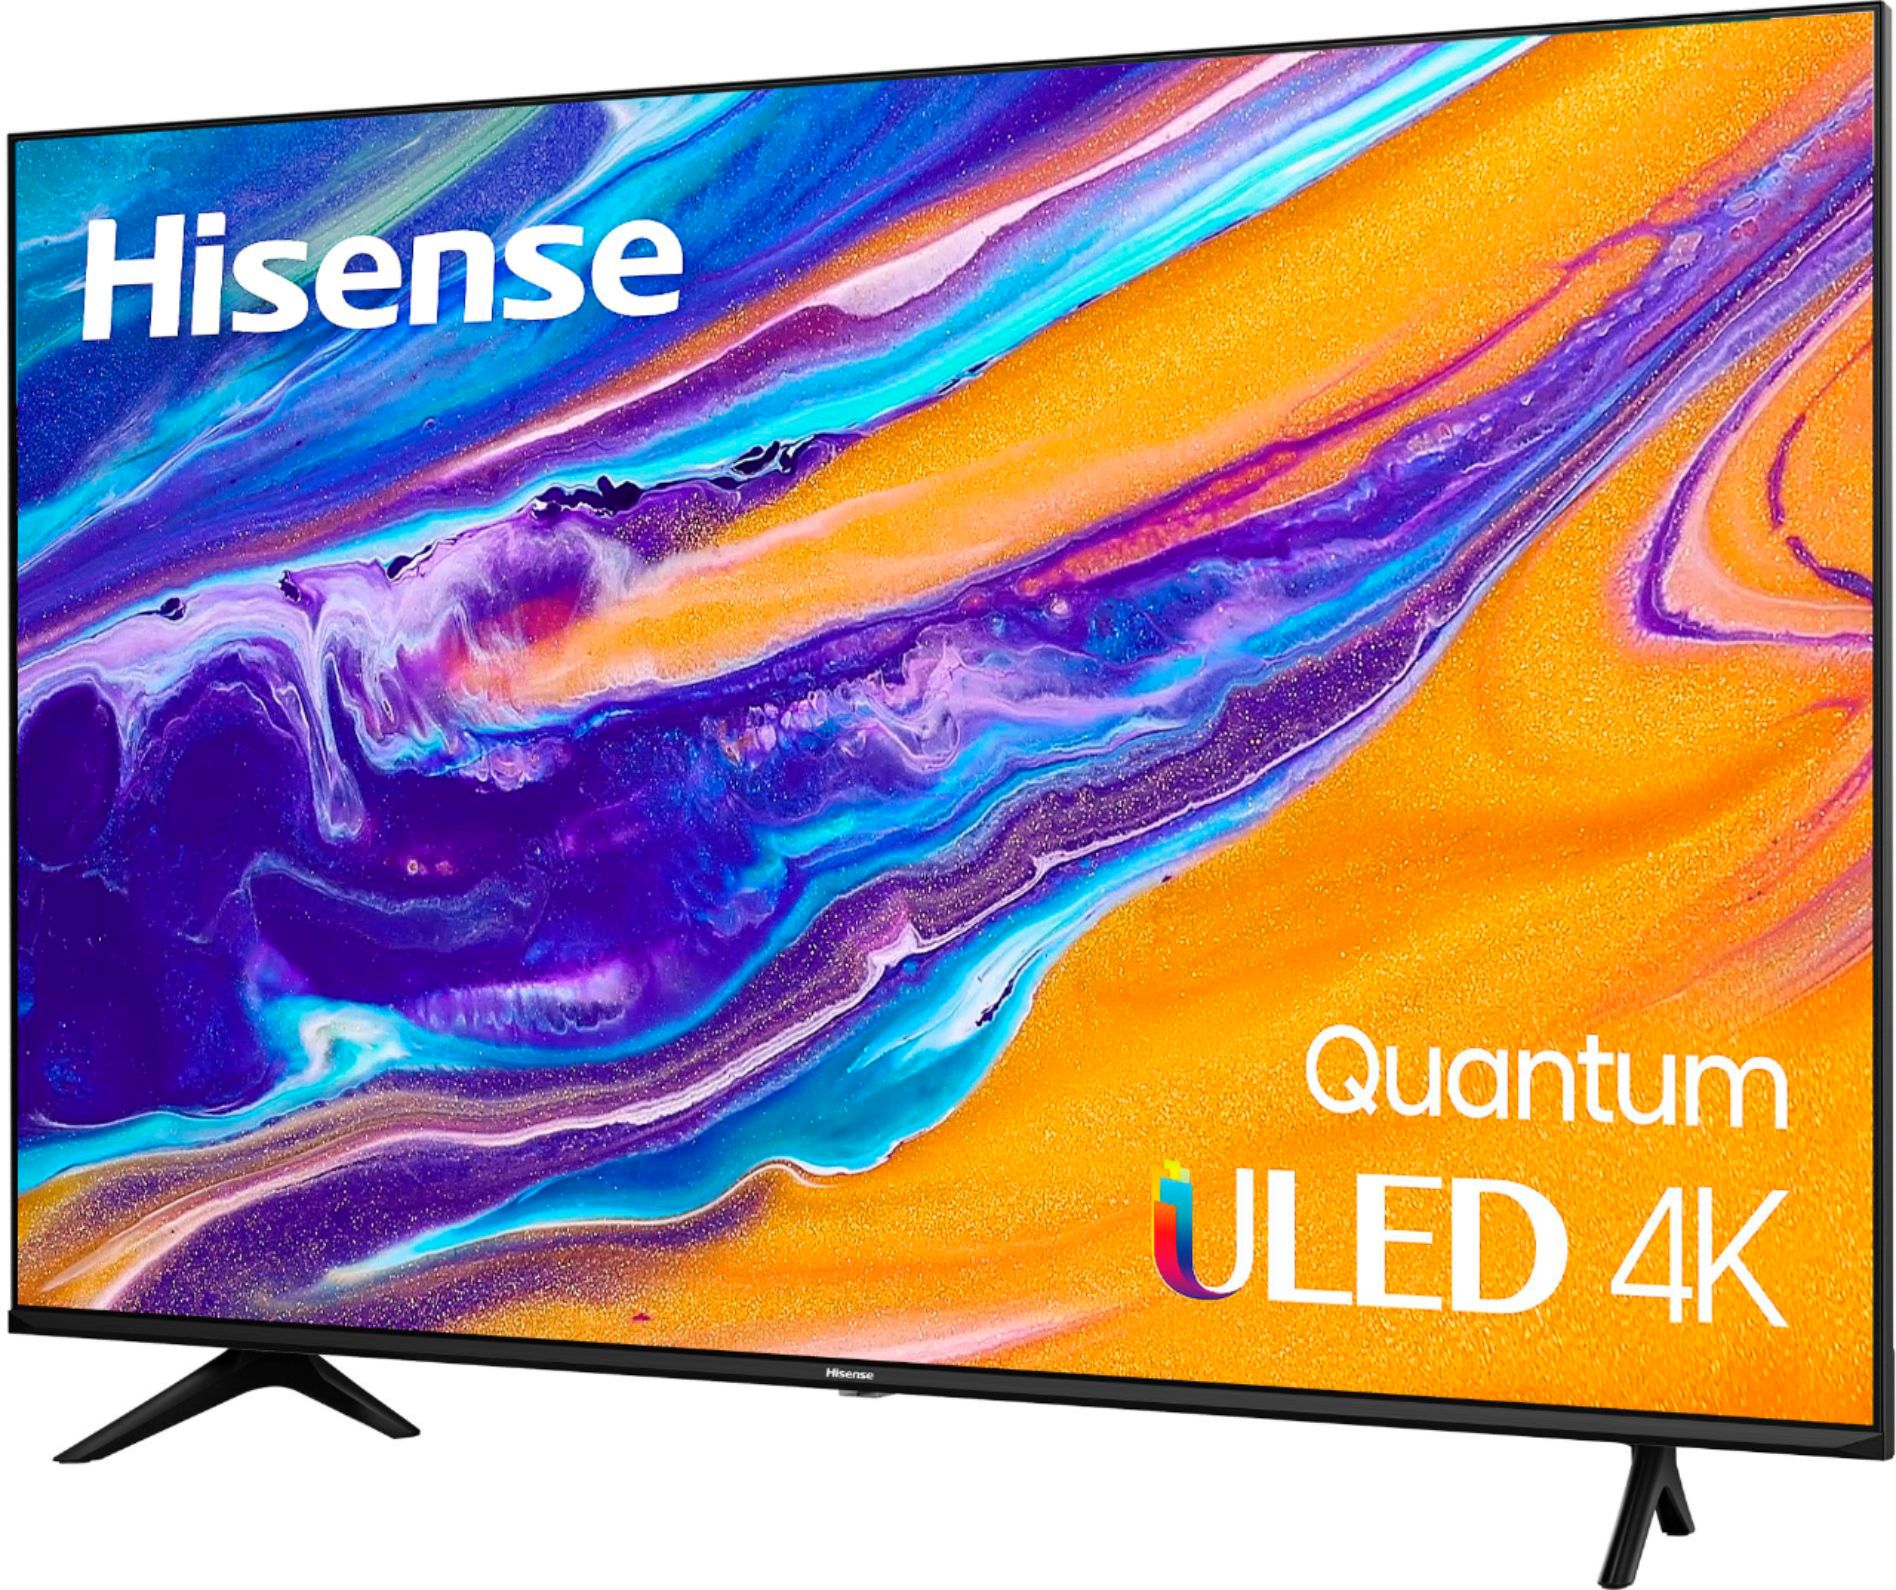 50" Hisense U6G 4K ULED Quantum HDR Smart TV $350